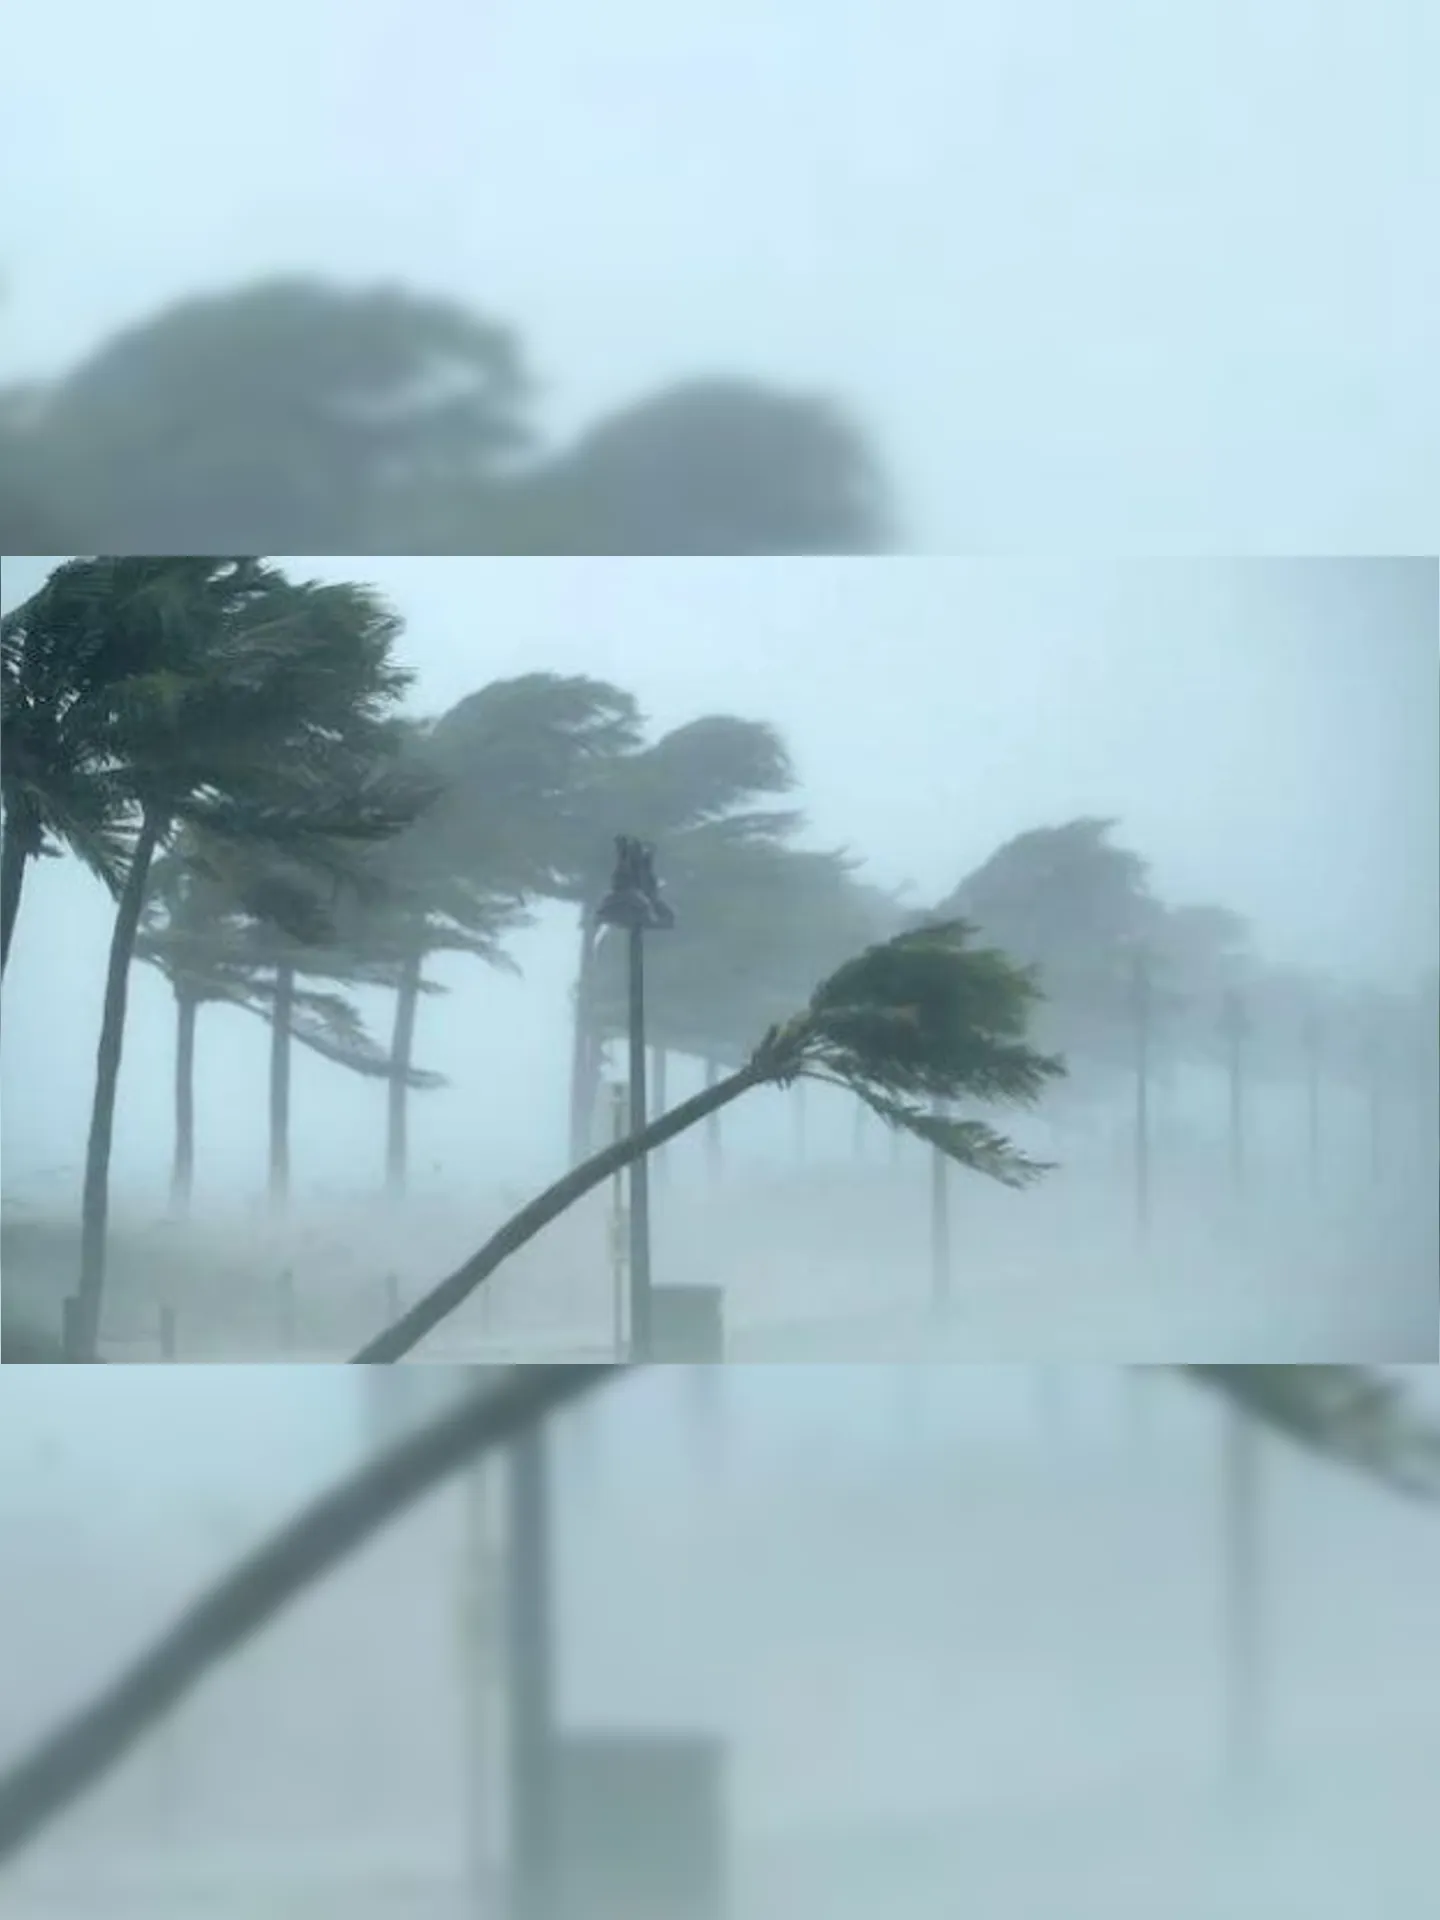 Vinte e oito cidades foram afetadas pela passagem do ciclone, devido aos fortes ventos e chuvas